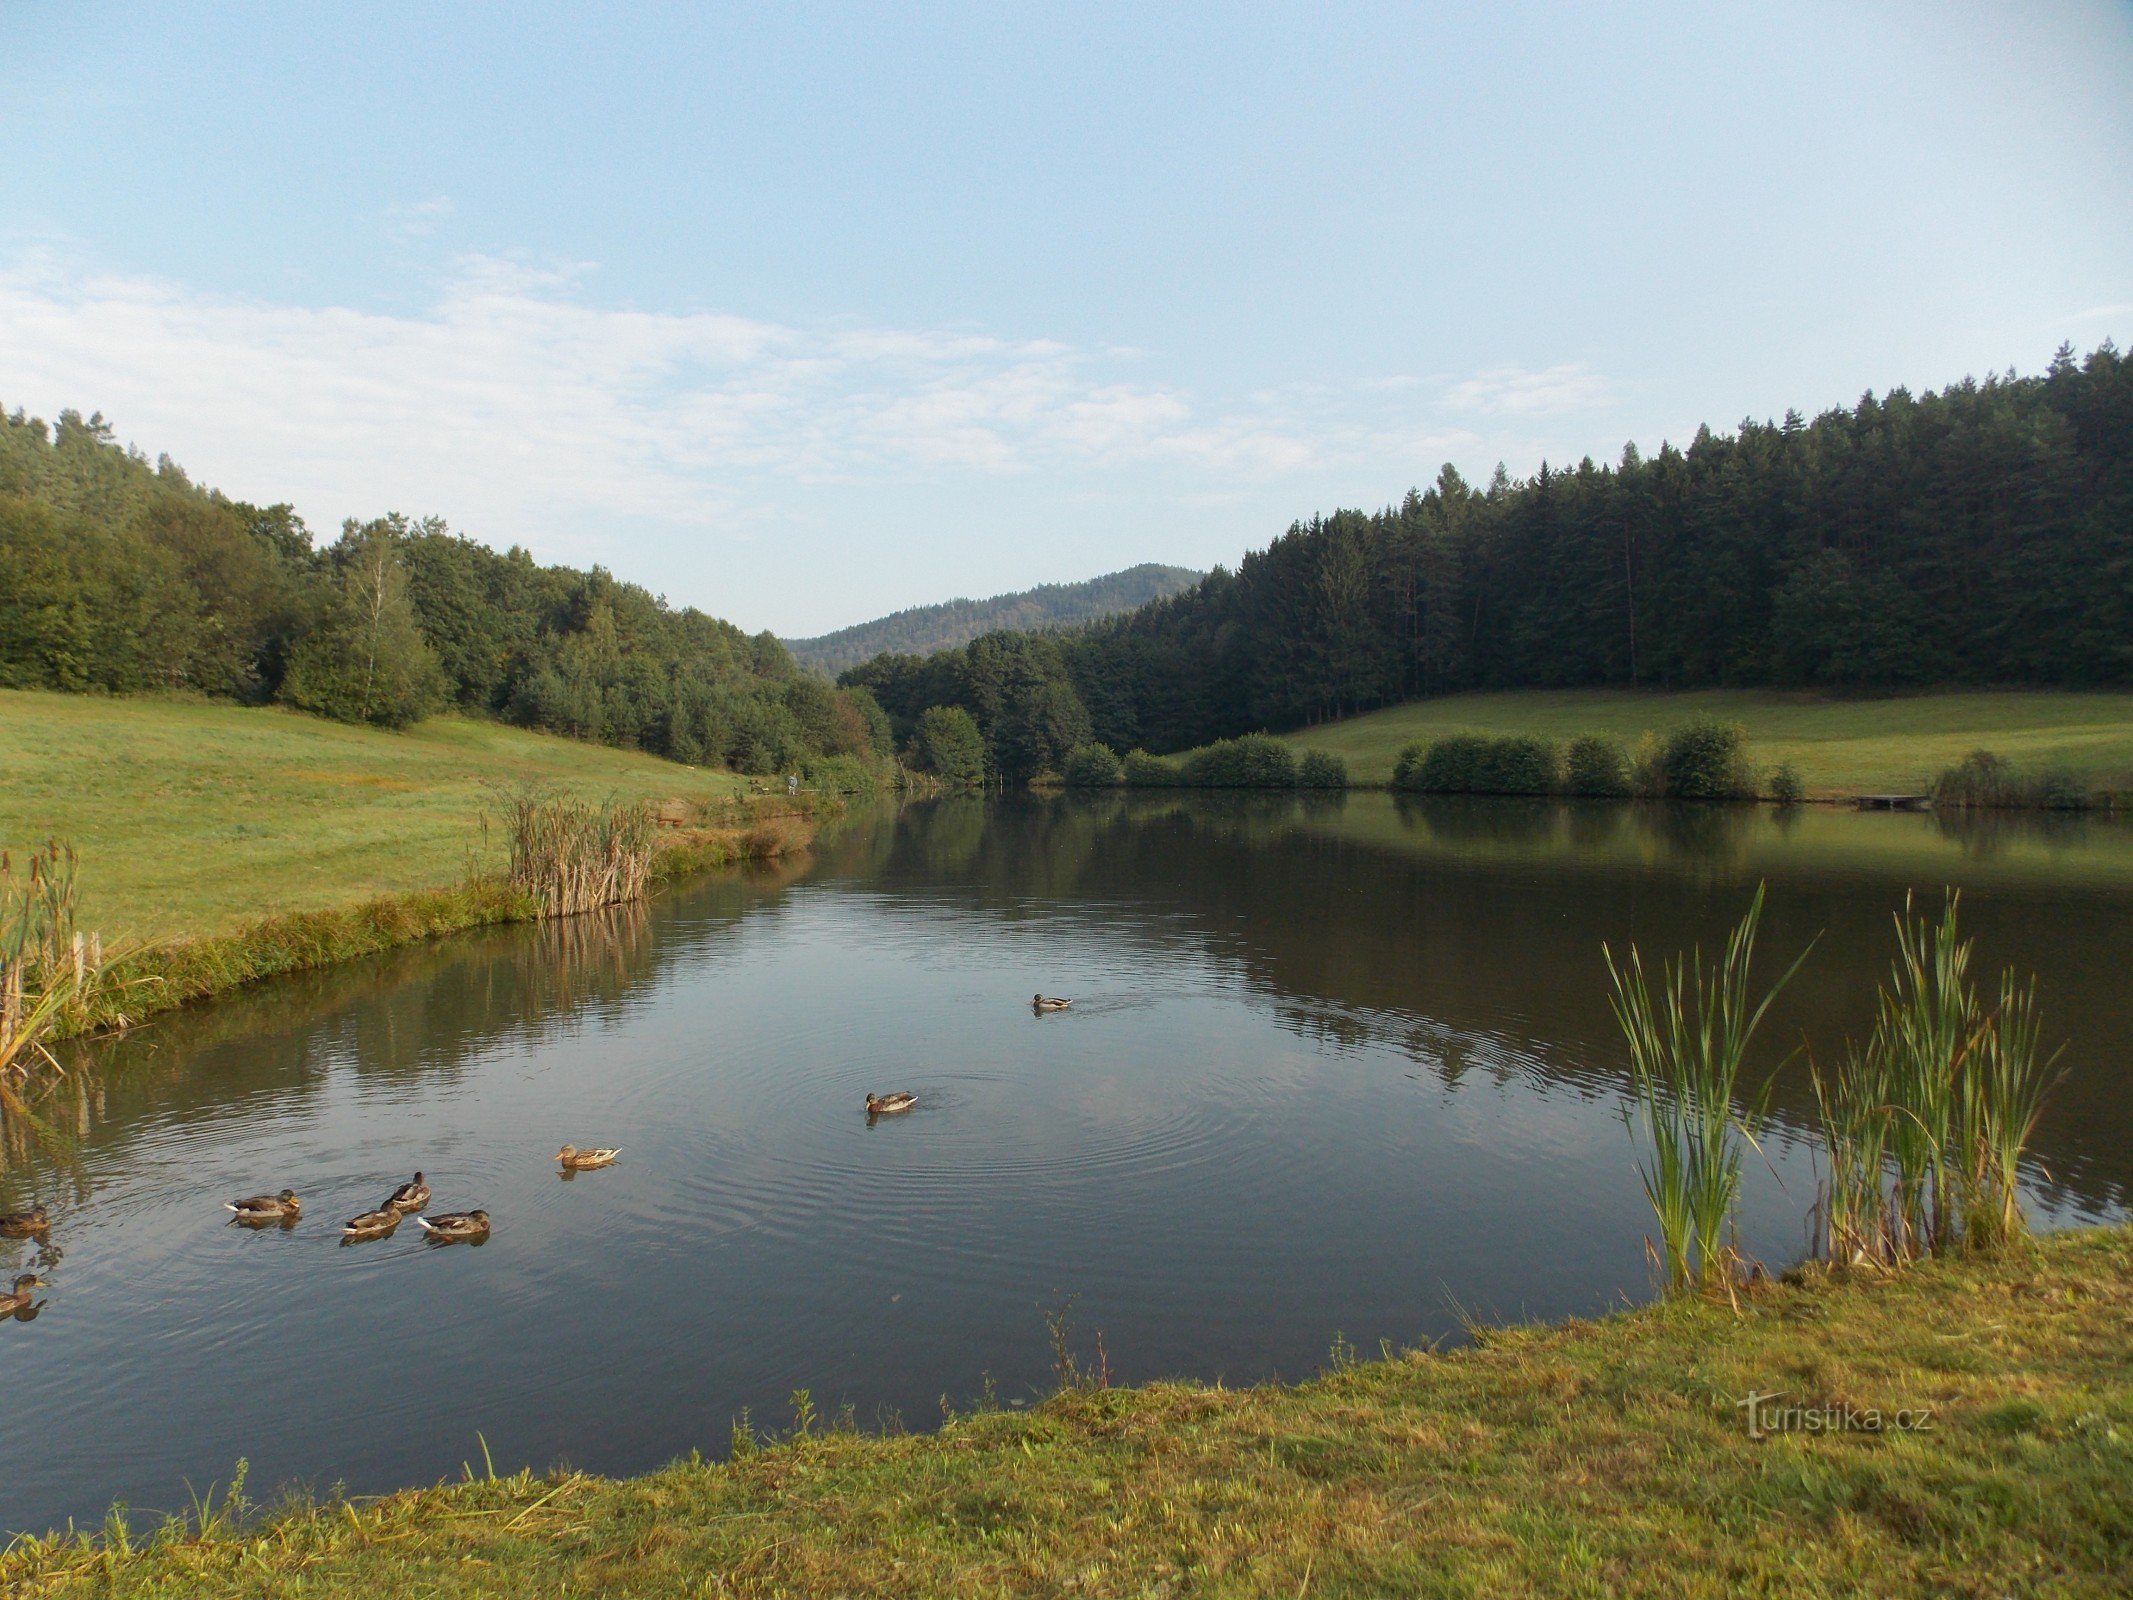 Rybník - Tĩnh vật tươi đẹp gần Újezd ​​gần Valašské Klobouk